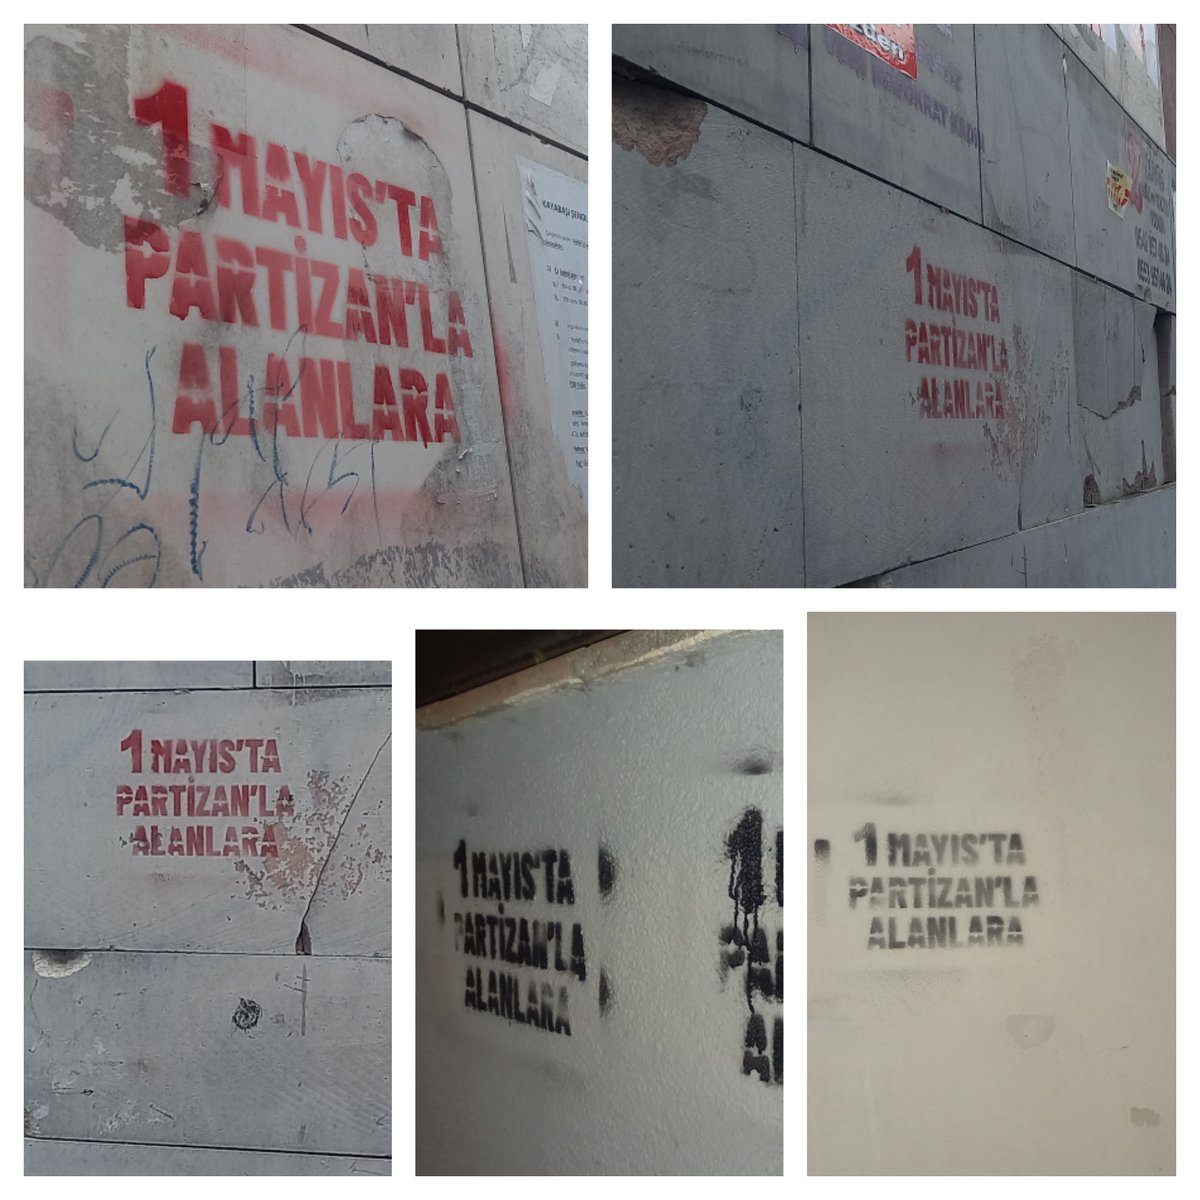 📍
İstanbul
İşçilerin, zamlara, yoksulluğa ve hayat pahalılığına karşı son bir yıldır gösterdiği tepkileri, direnişi ve öfkeyi 1 Mayıs'a taşımak için ileri...
Perfetti'de, Lezita'da direnişi büyütmek ve kazanmak için 1 Mayıs'a..!
Birliğe, Direnişe, 1 Mayıs'ta Alanlara
#1Mayıs